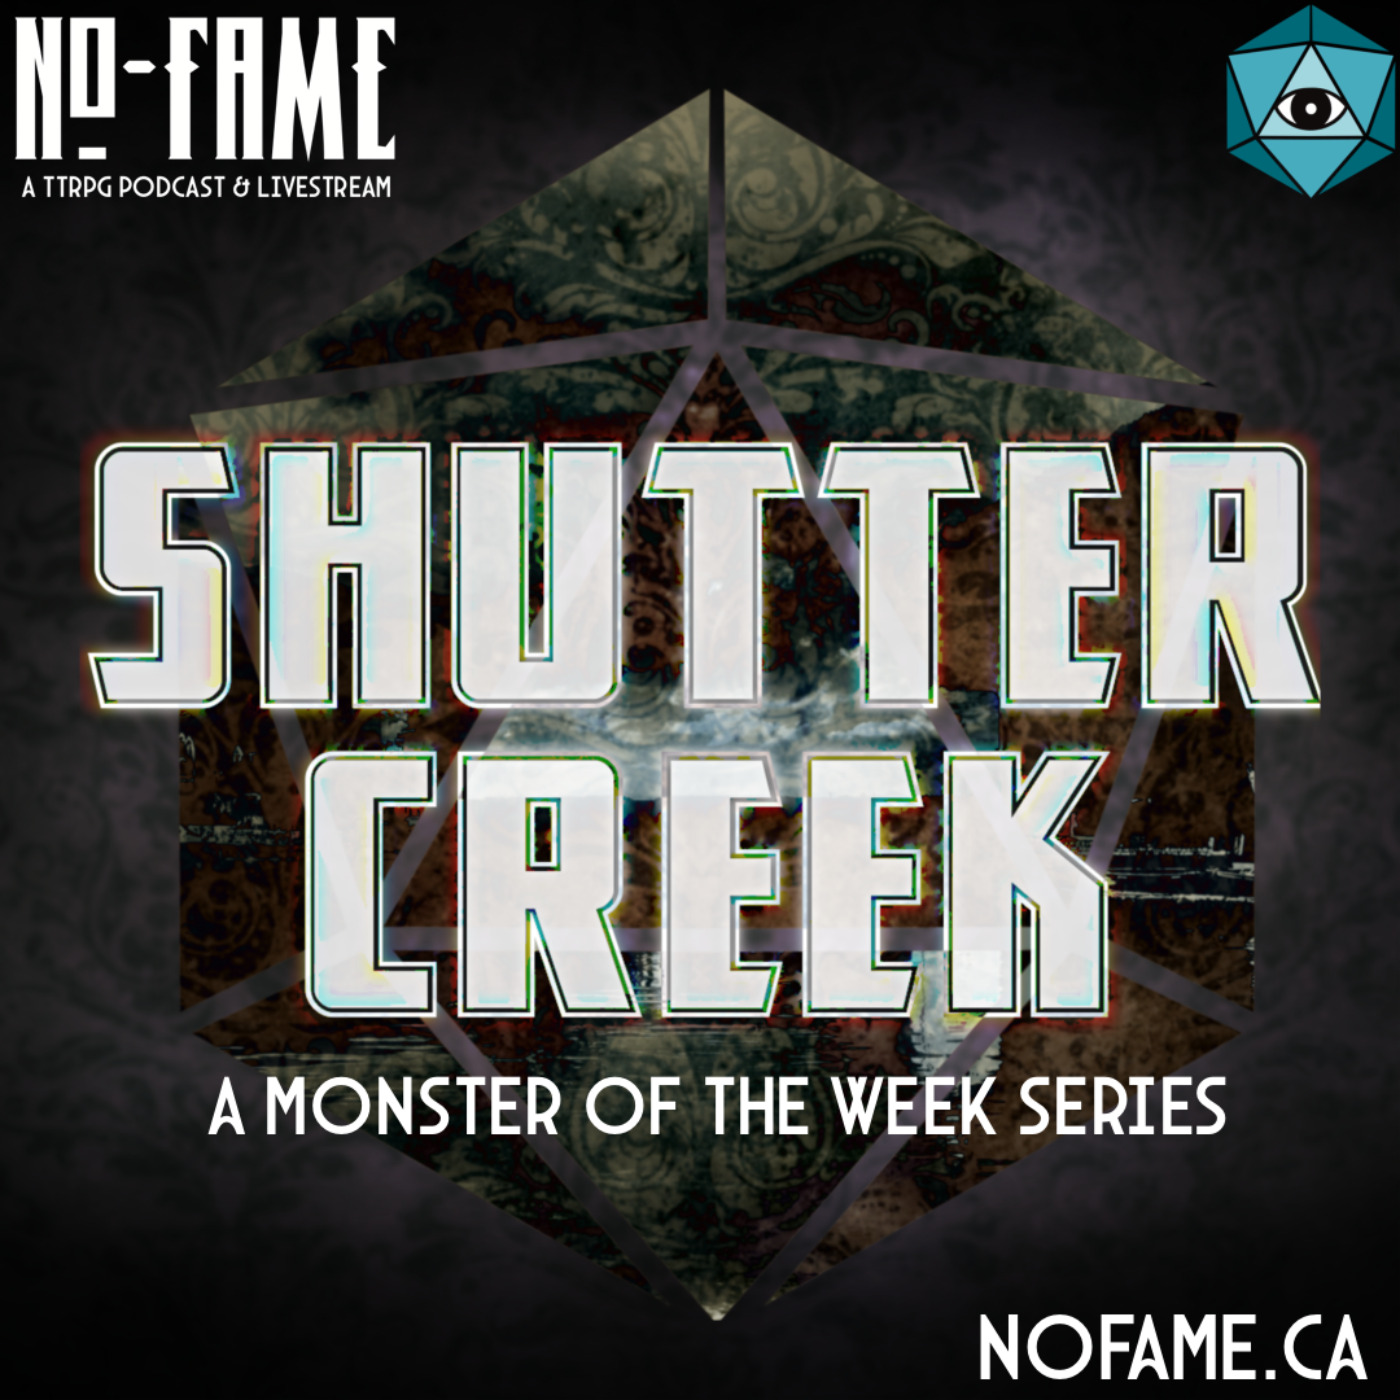 cover art for Monster of the Week - Shuttercreek Session 0